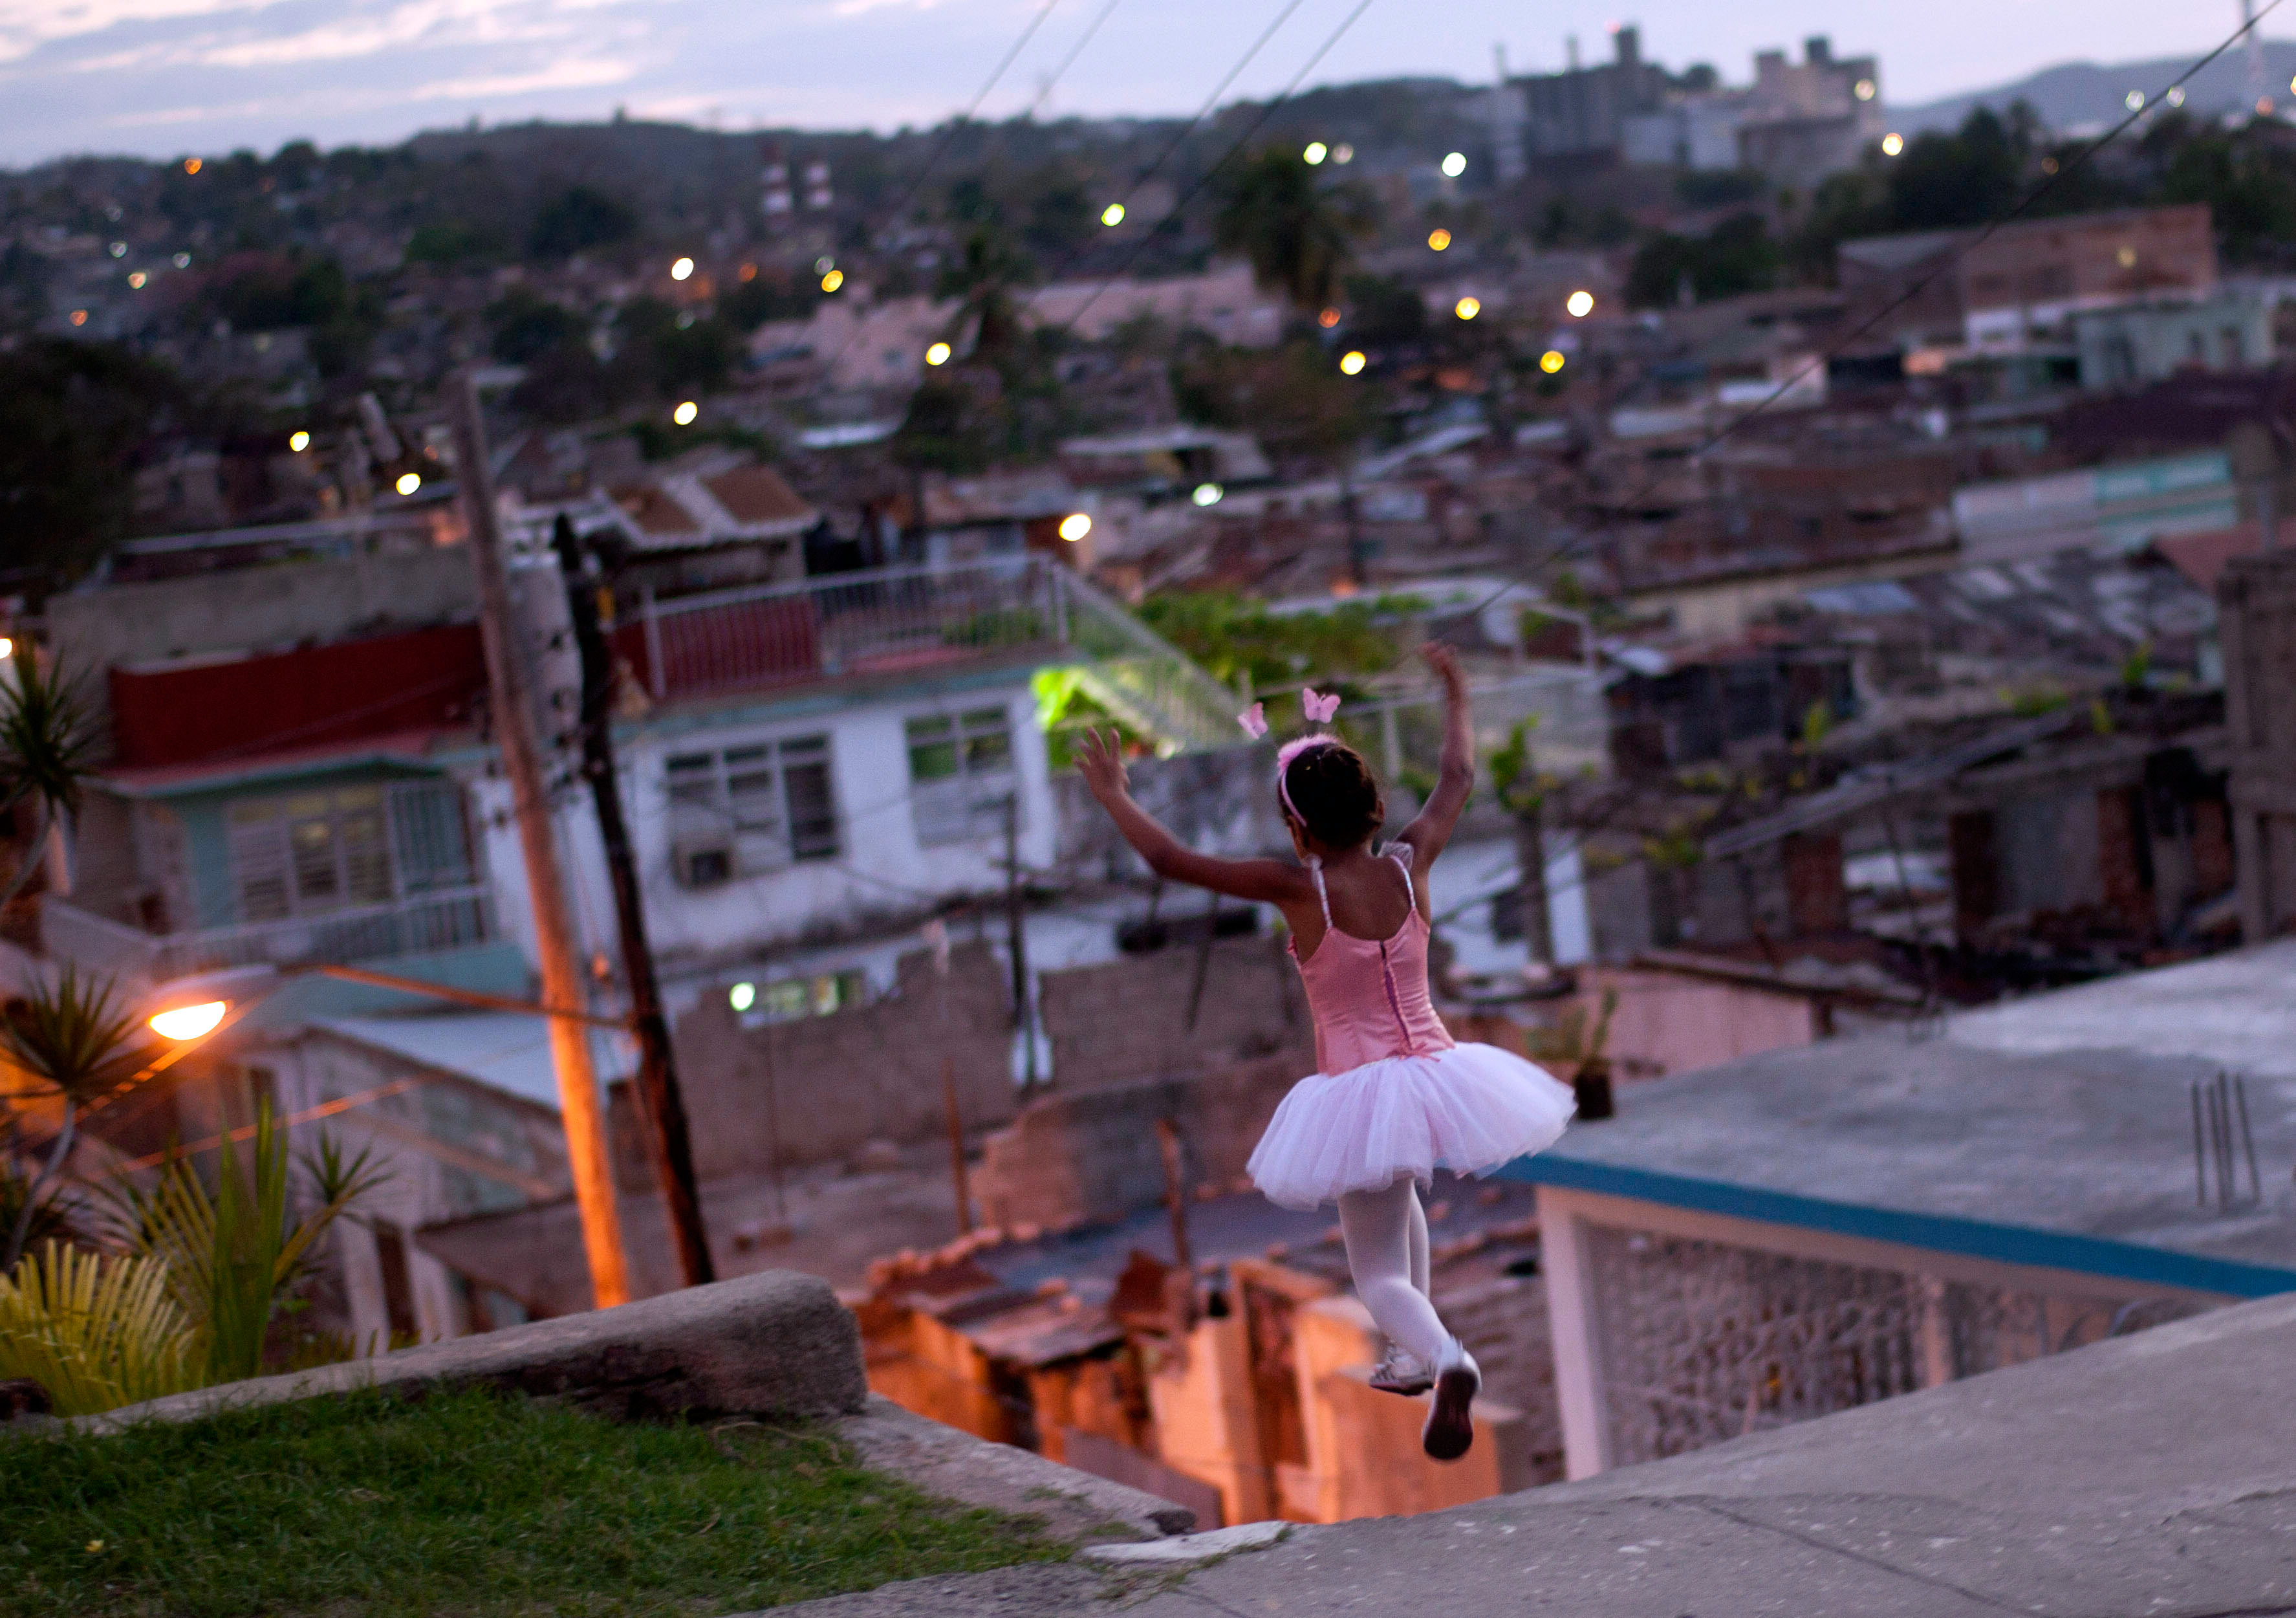 March 25, 2012. A girl wearing a ballet dress plays on the street in Santiago de Cuba, Cuba.